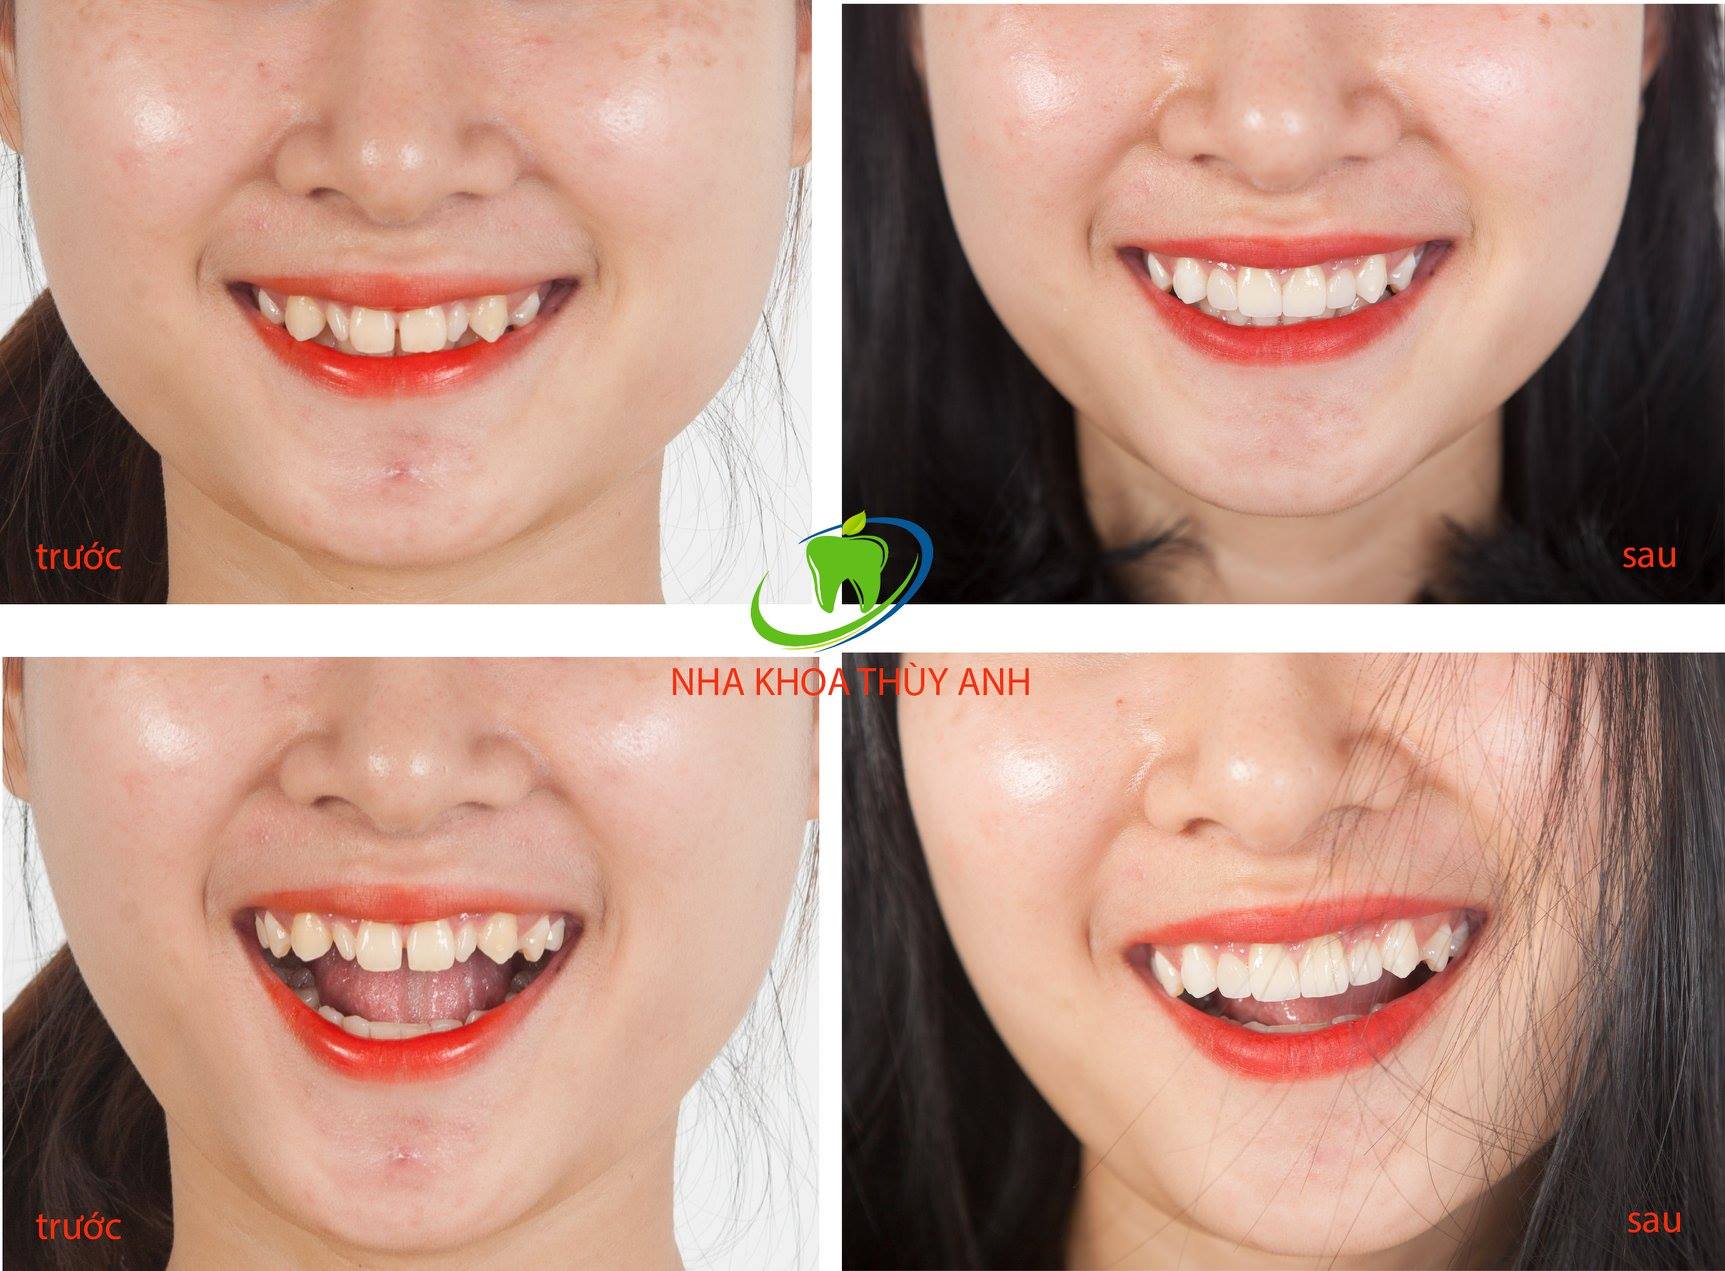 Răng Dị Dạng: “Không cần tự ti với những răng dị dạng, bạn hoàn toàn có thể sửa chữa và cải thiện vẻ ngoài của chính mình với các phương pháp làm đẹp răng miệng. Hãy xem qua hình ảnh và cùng tìm hiểu thêm về các giải pháp để có nụ cười hoàn hảo nhé!”